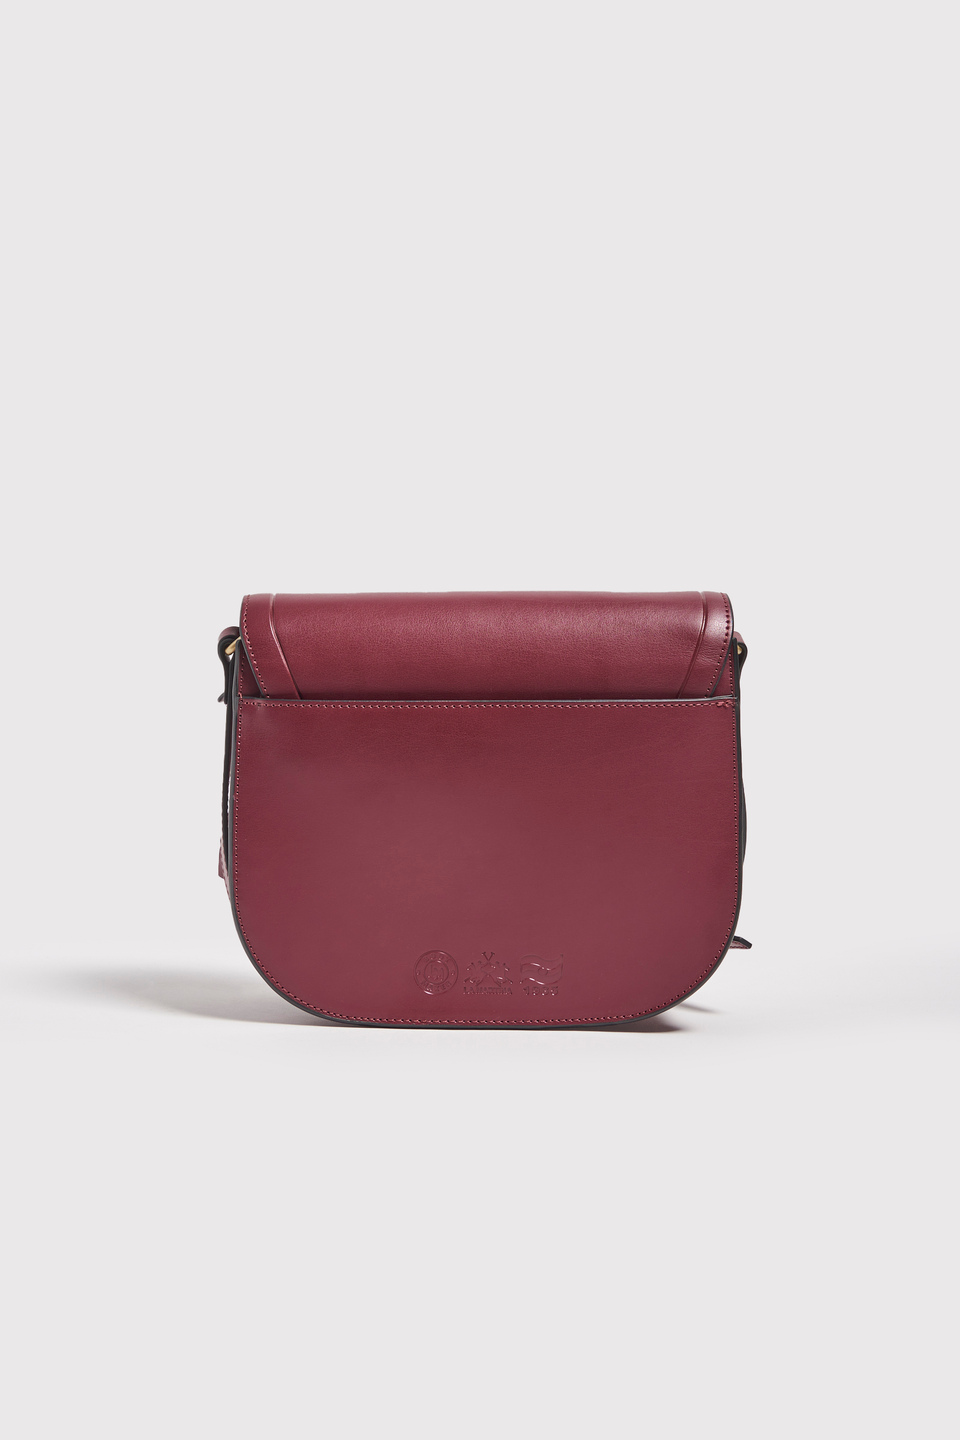 Brushed leather bag - La Martina - Official Online Shop